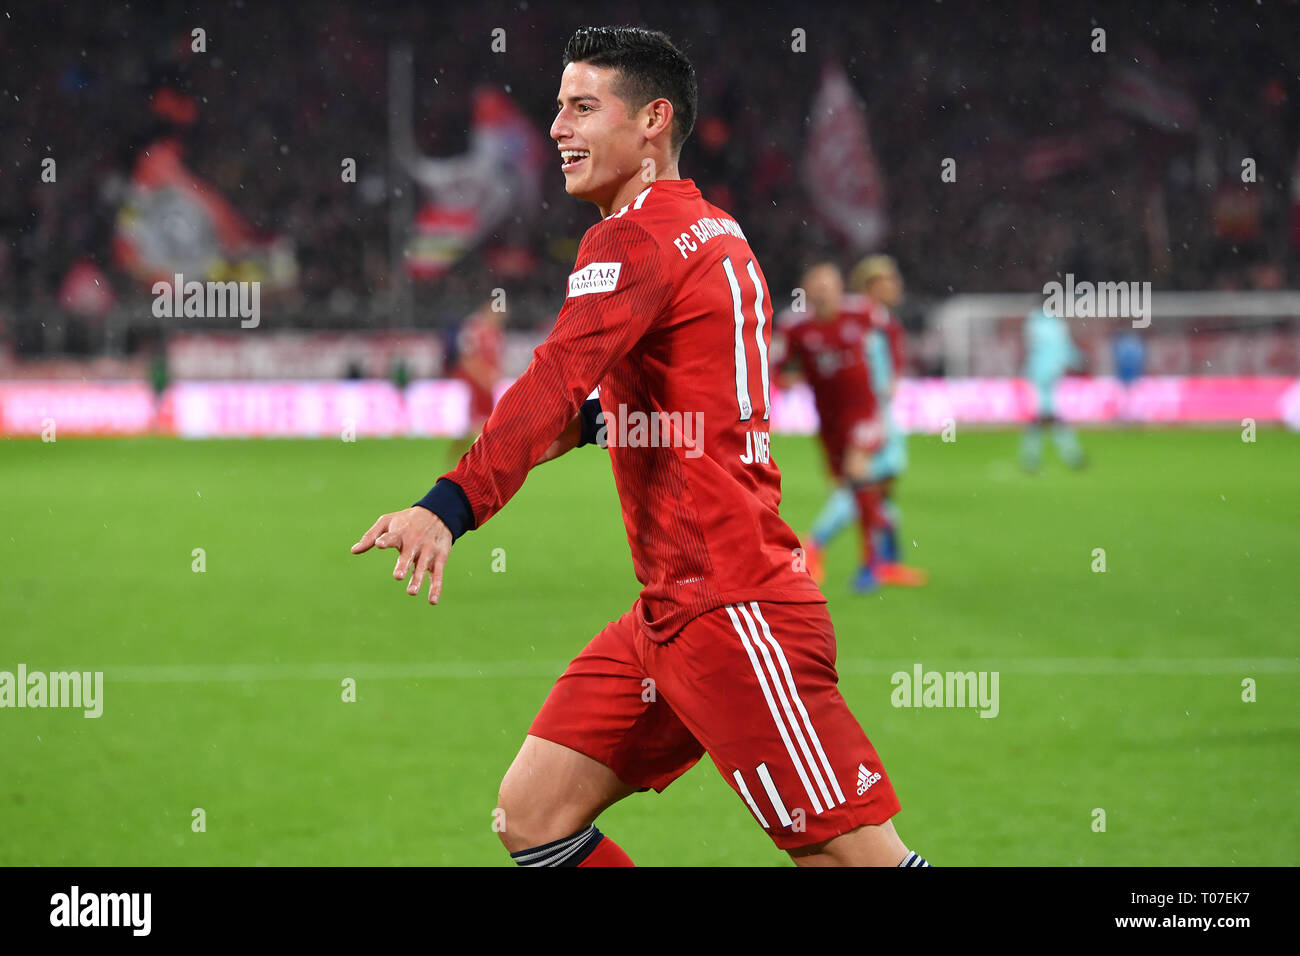 Munich Deutschland 17th Mar 2019 Goaljubel James Rodriguez Fc Bayern Munich Jubilation Joy Excitement Action Single